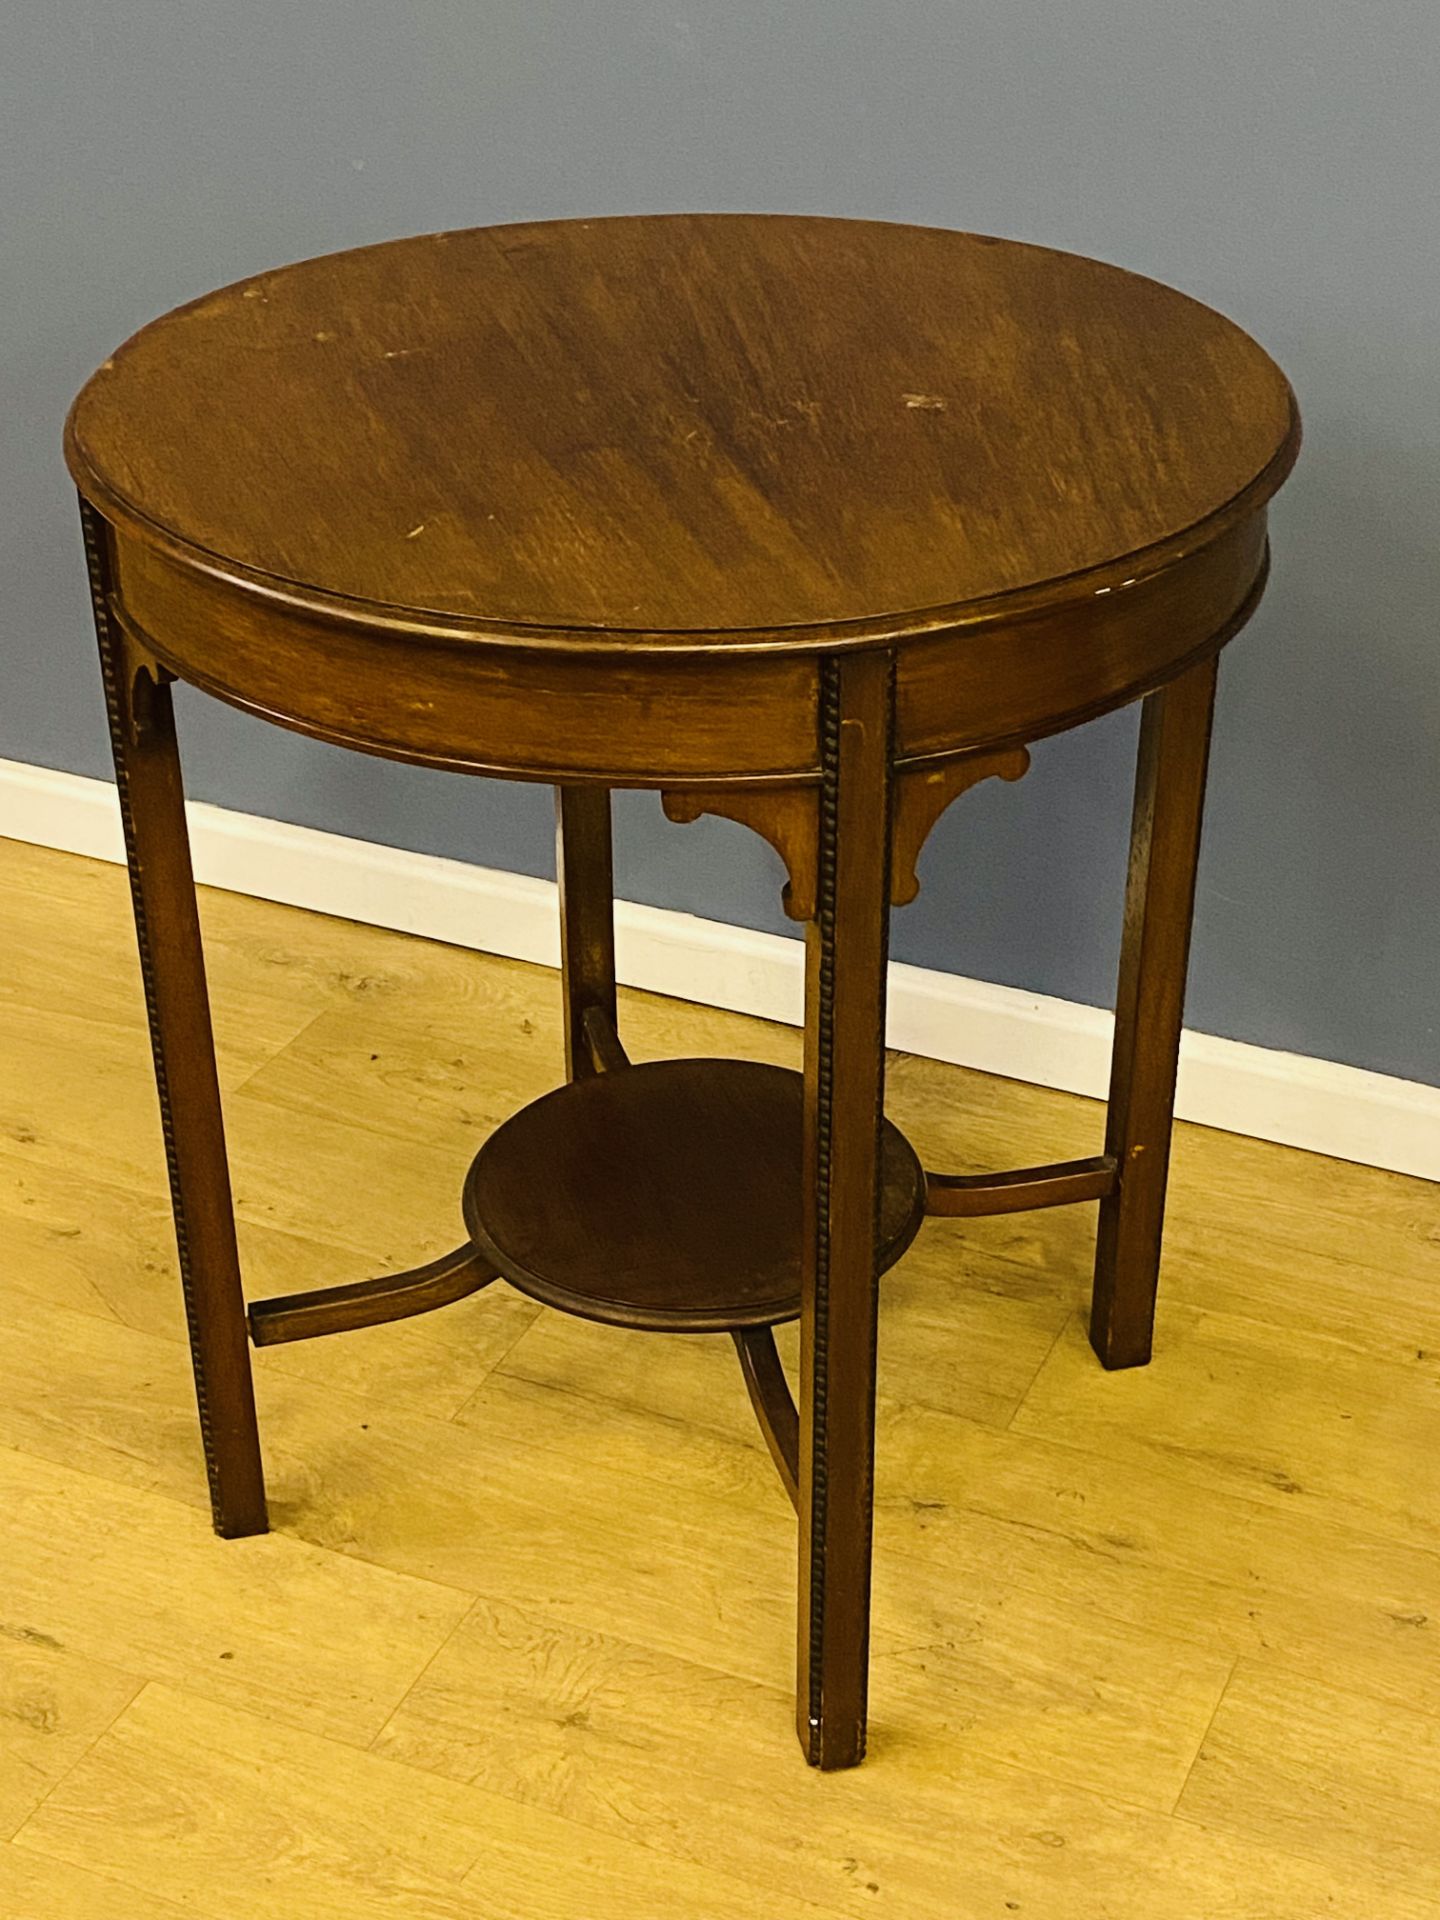 Victorian circular mahogany table - Image 2 of 3